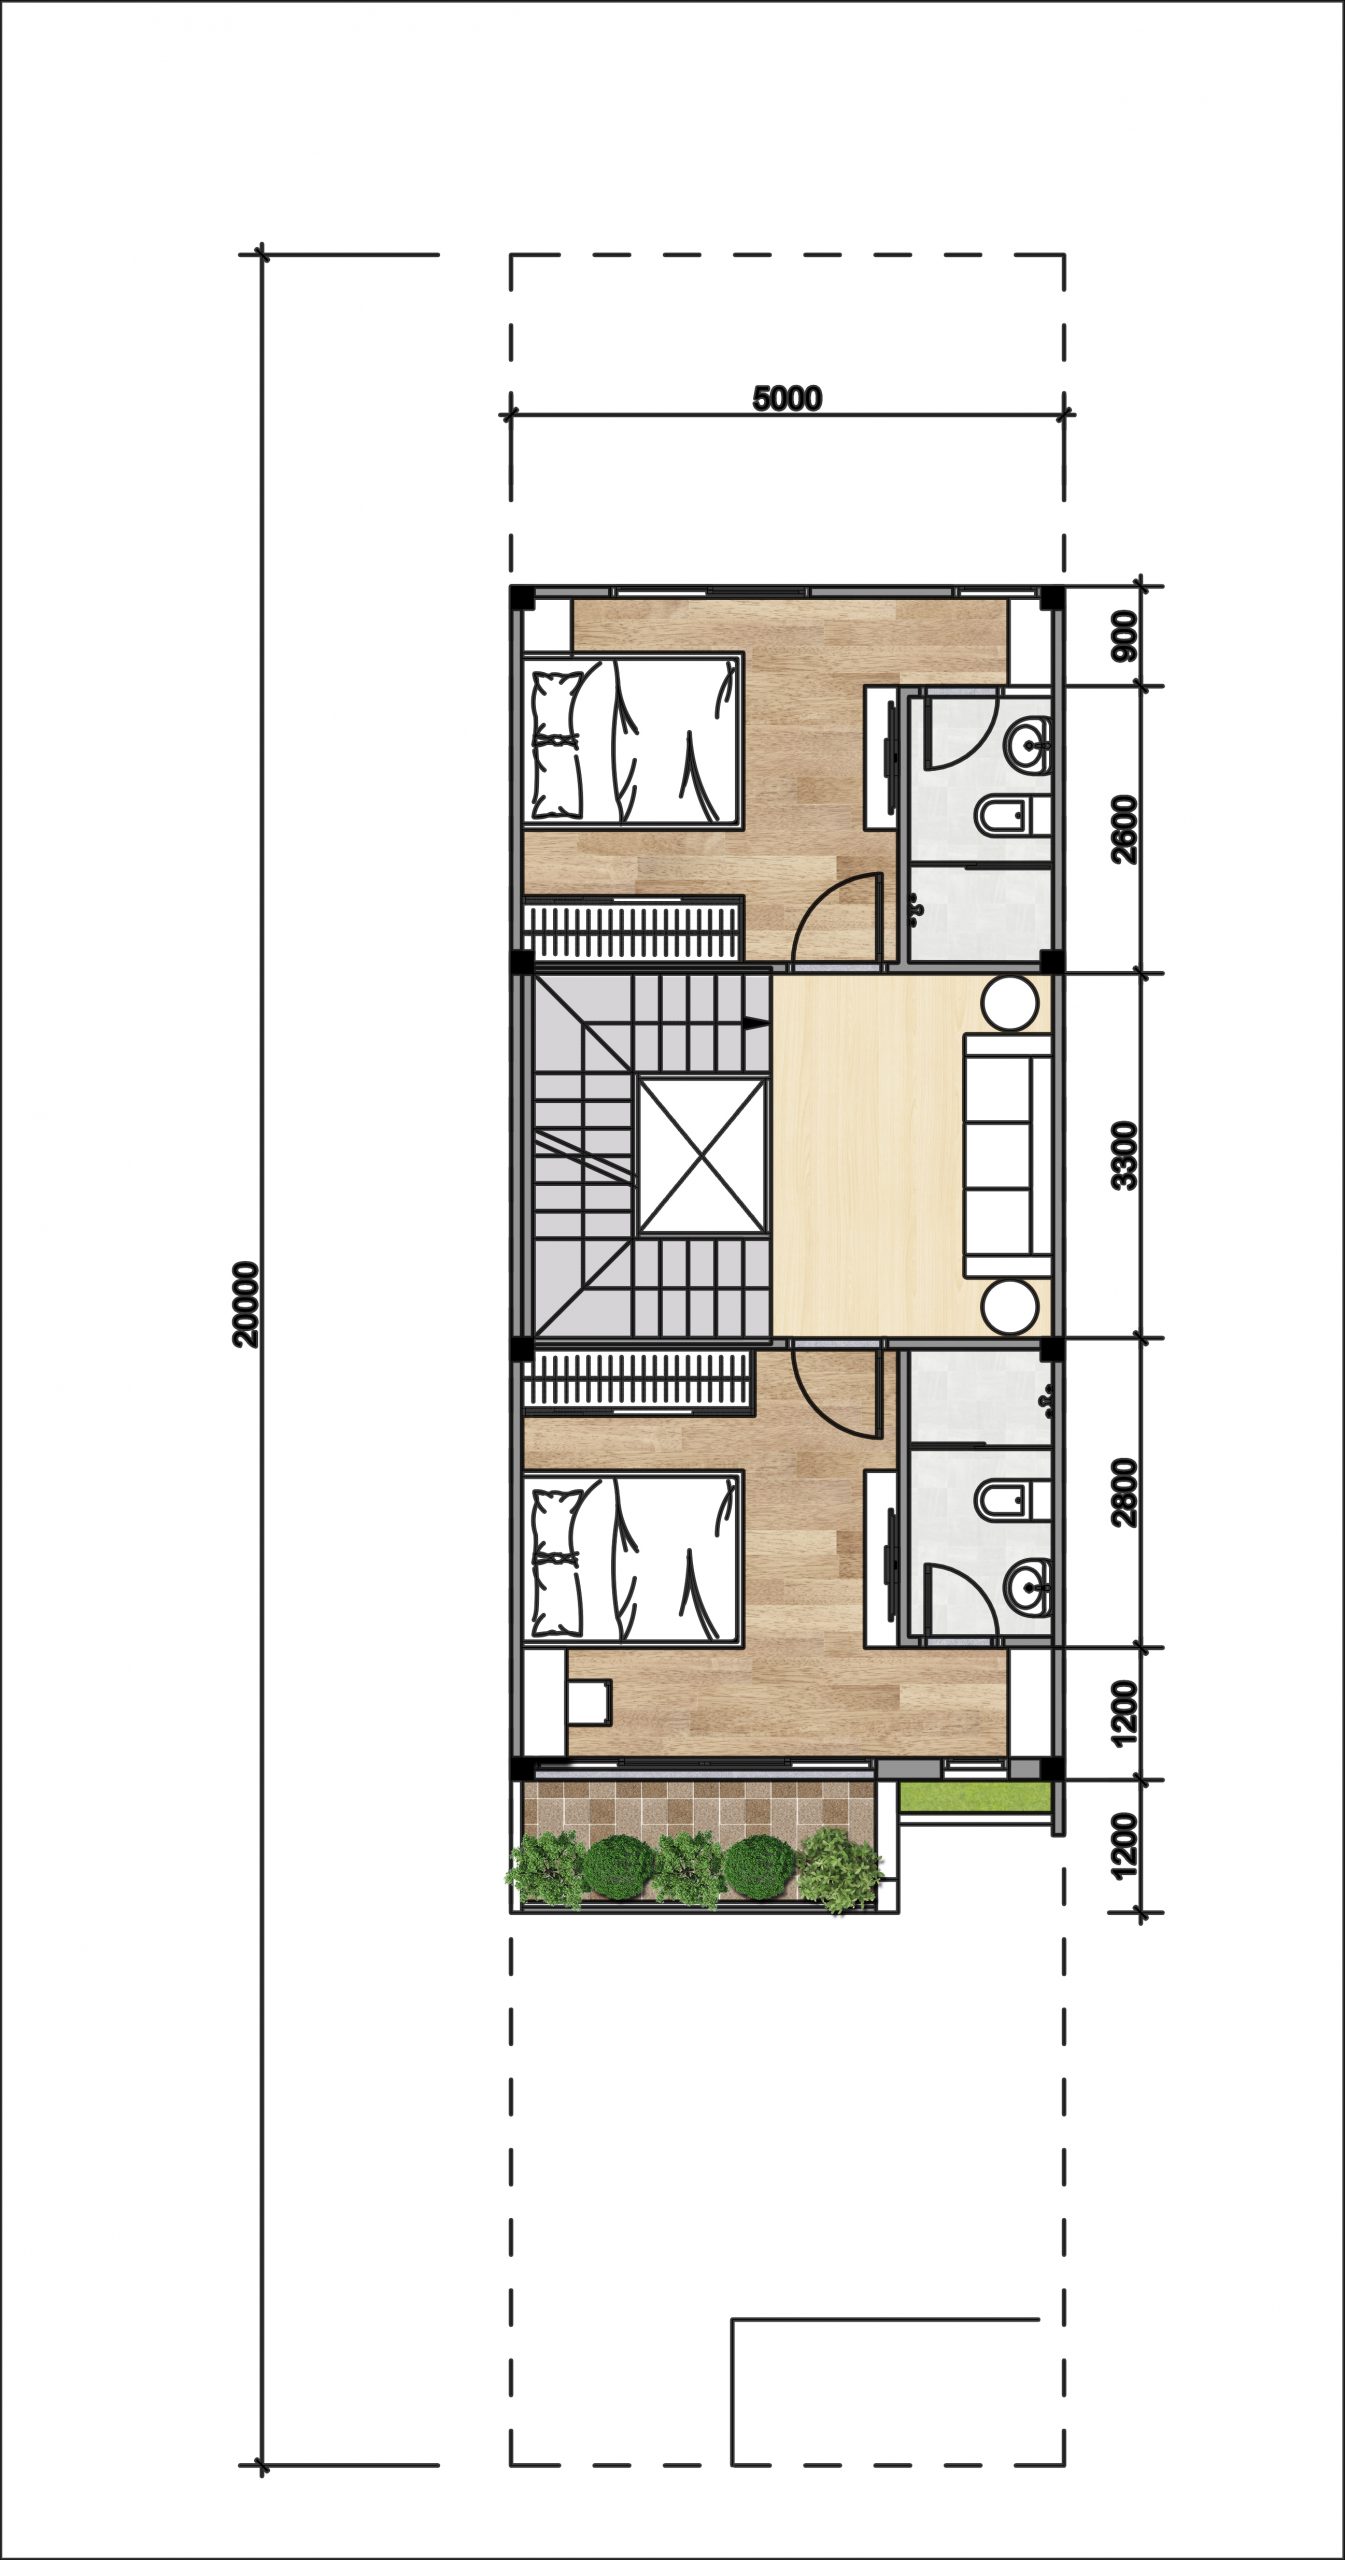 Nhà liên kế phố dự án Gem Sky World có diện tích đất 5x20 m2 được thiết kế 3 phòng ngủ, 4 phòng vệ sinh, 1 tầng thượng và 1 tầng mái. Tầng 2 gồm 2 phòng ngủ, 1 phòng sinh hoạt và 2 phòng vệ sinh trong